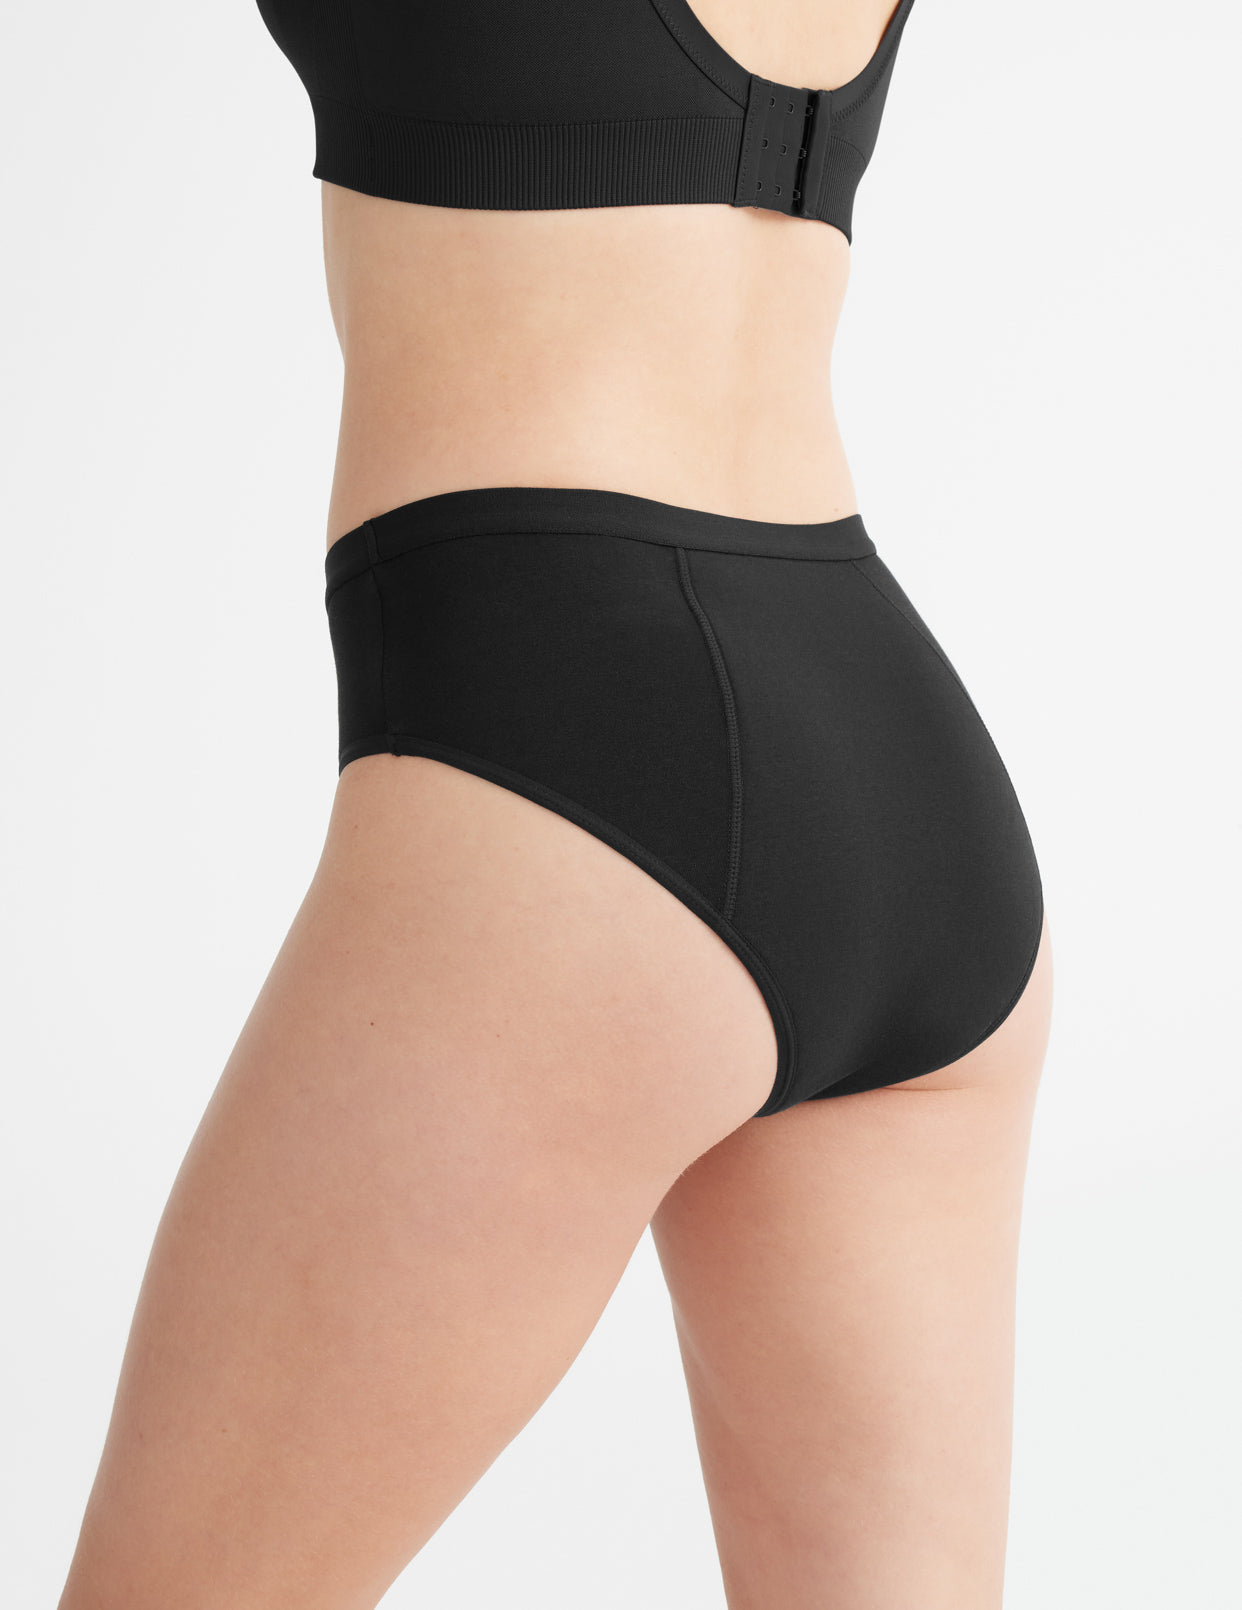 knix, Intimates & Sleepwear, Knix Leakproof Bikini Underwear Size Small  Black Brand New In Sealed Package